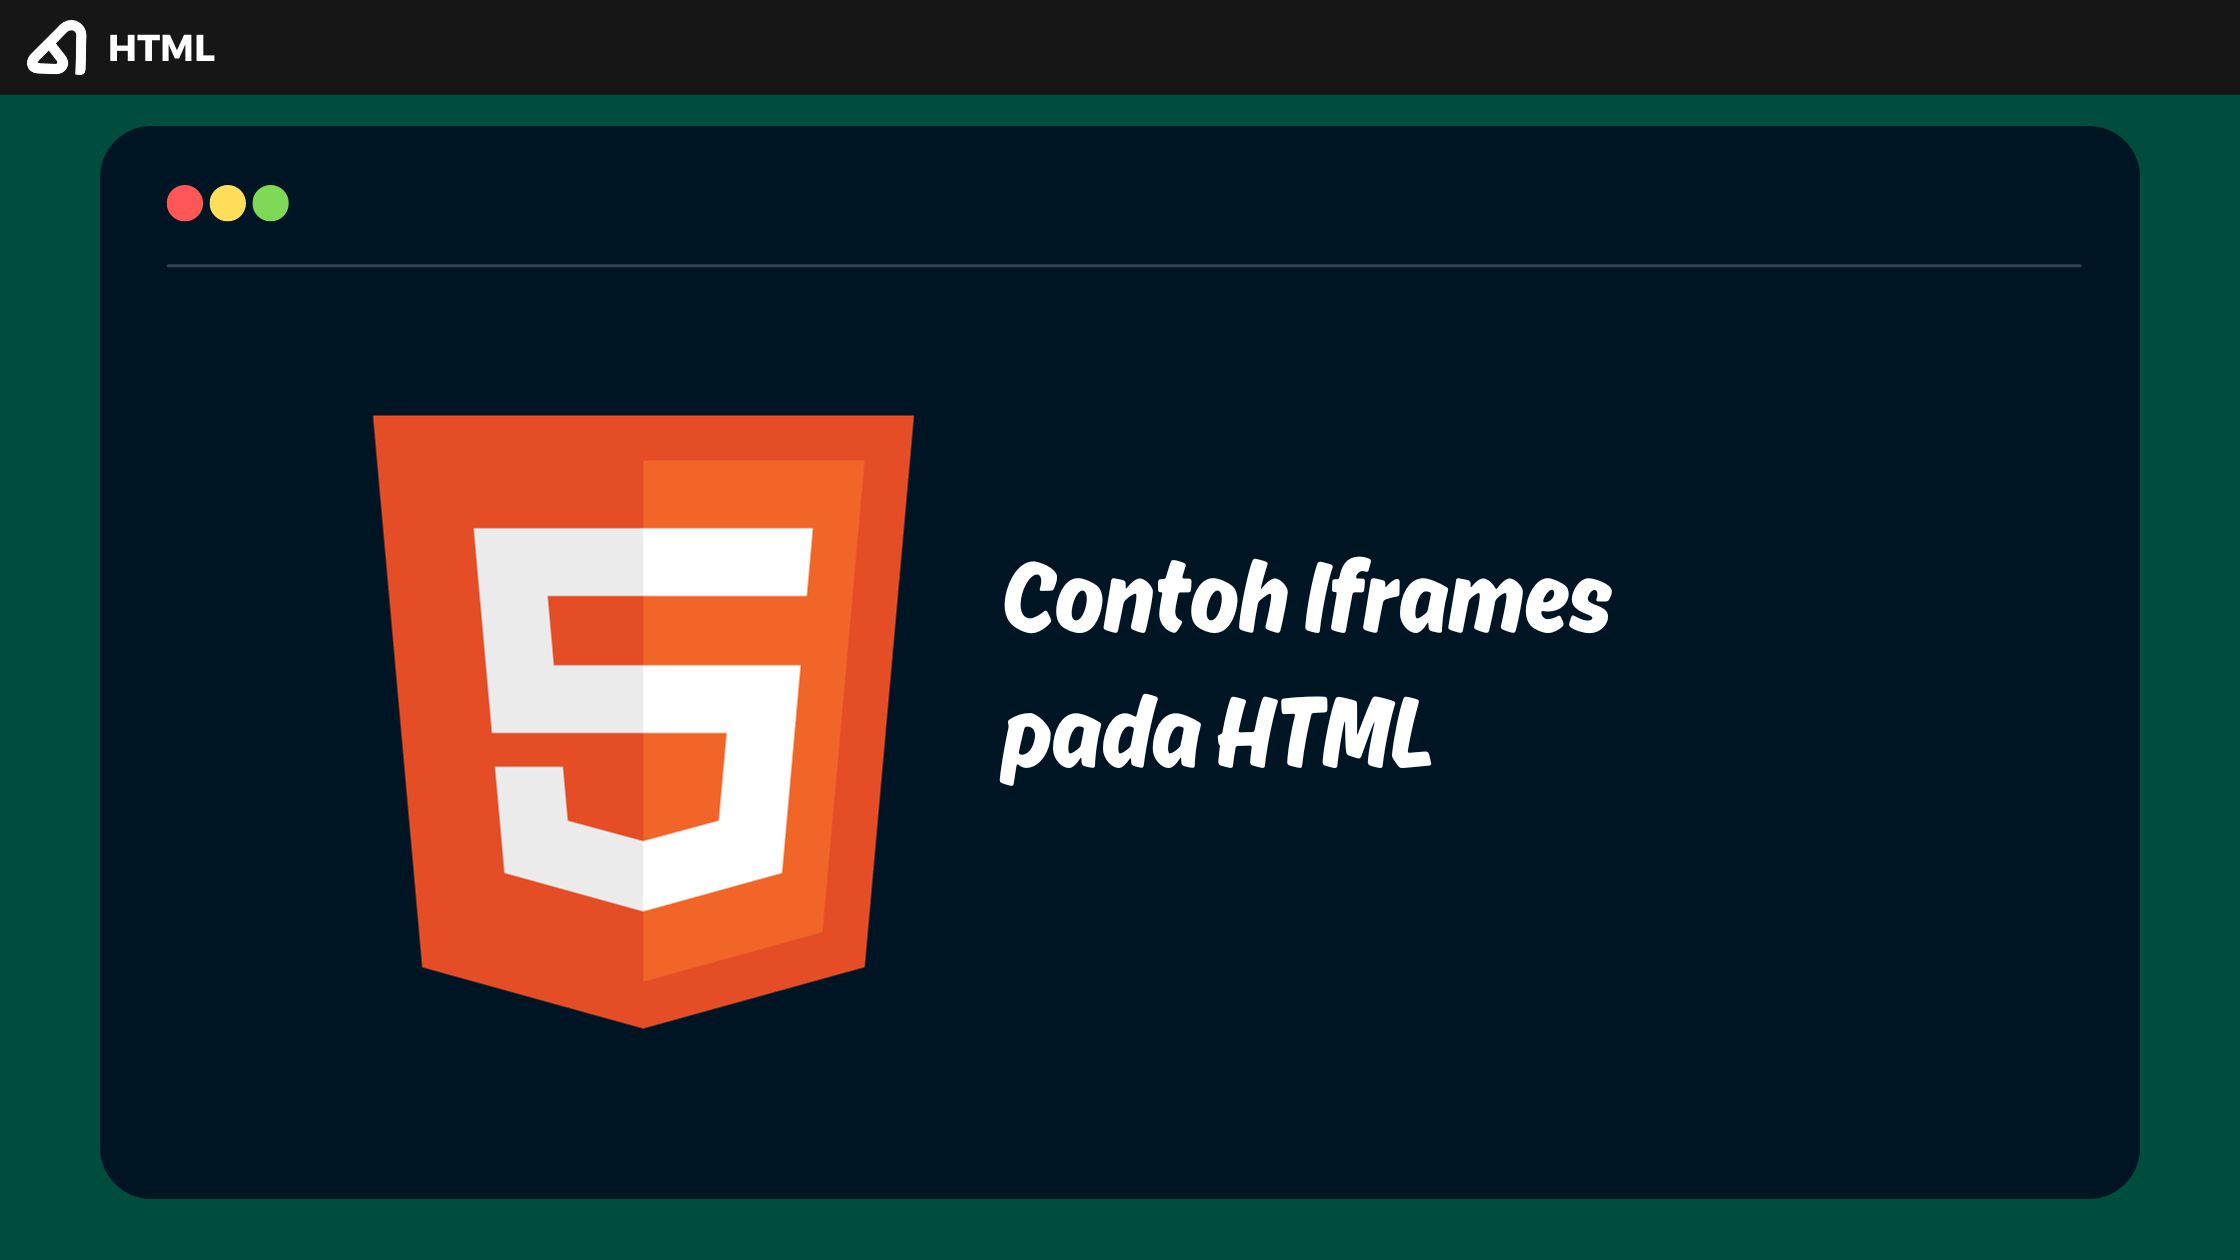 Contoh Iframes pada HTML